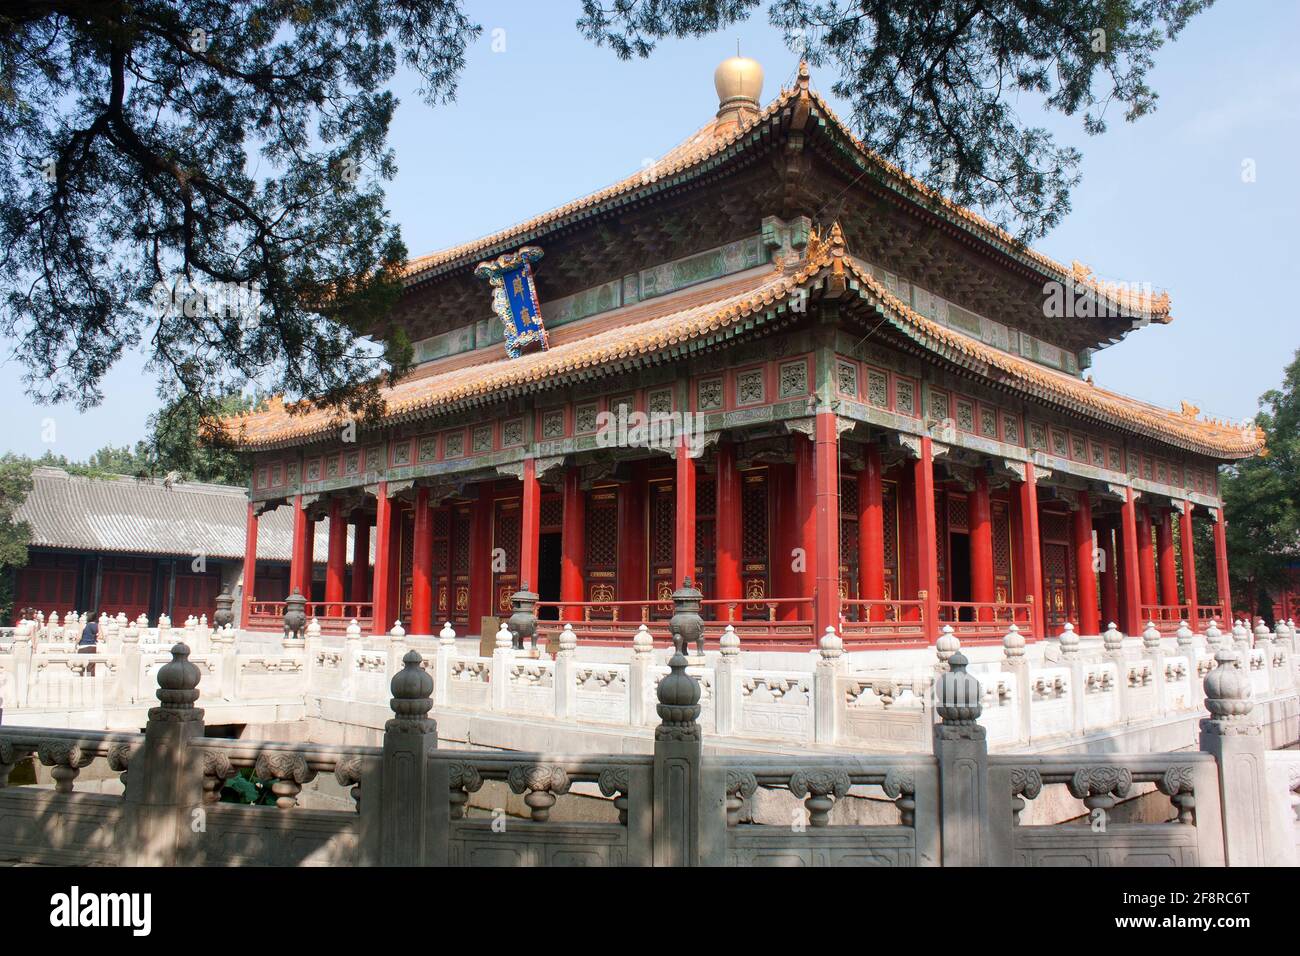 Vue de l'ancien temple confucianiste - il y a l'un des meilleurs temples de Pékin, en chine Banque D'Images